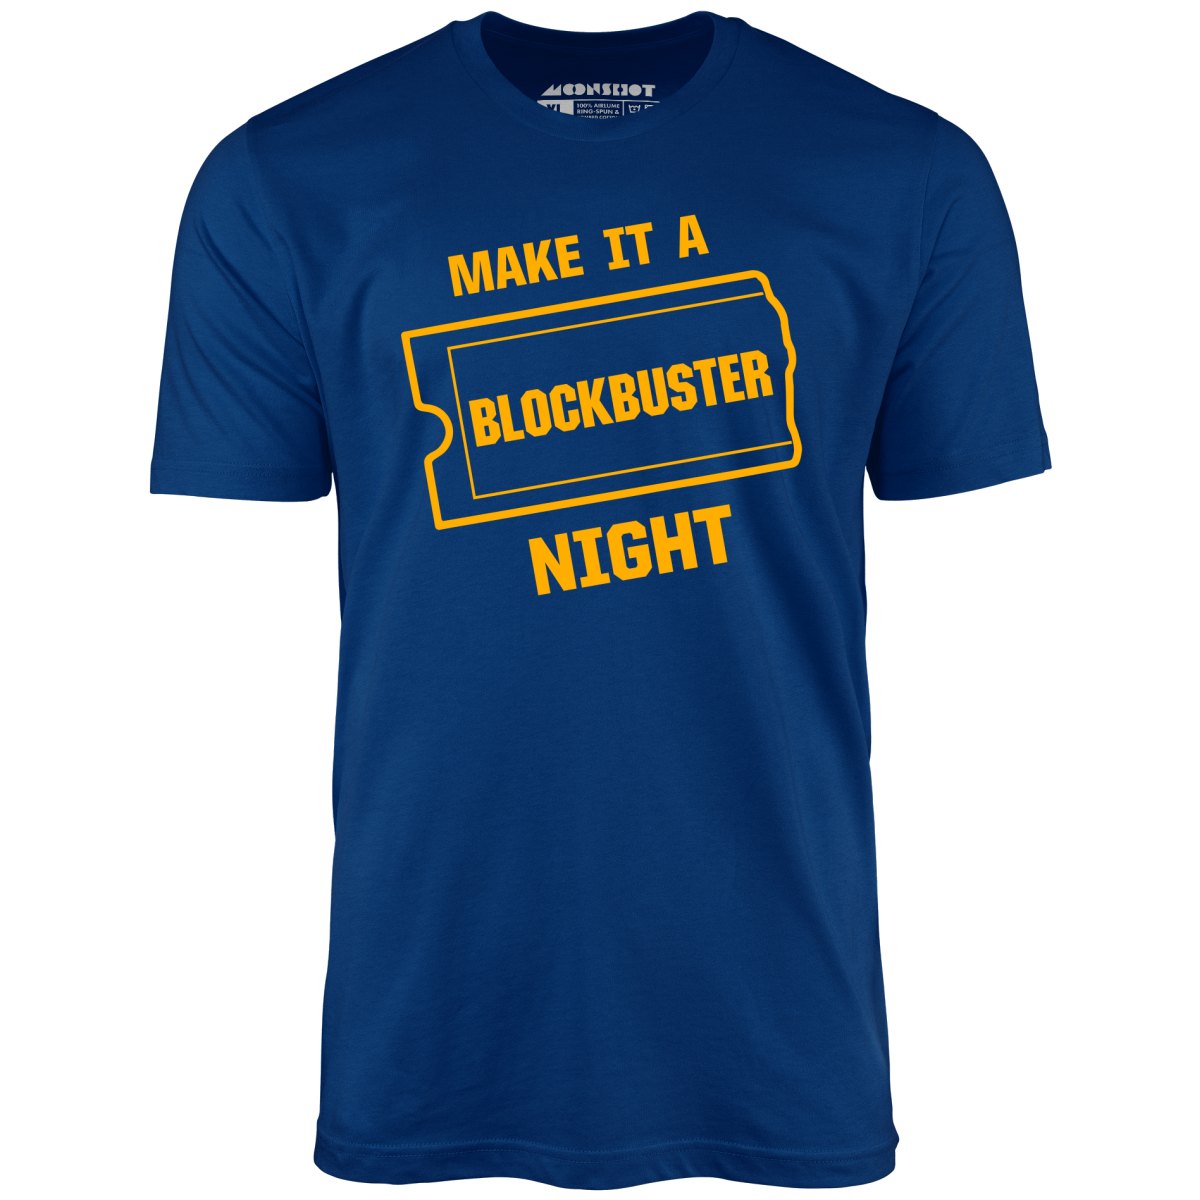 Make it a Blockbuster Night - Unisex T-Shirt